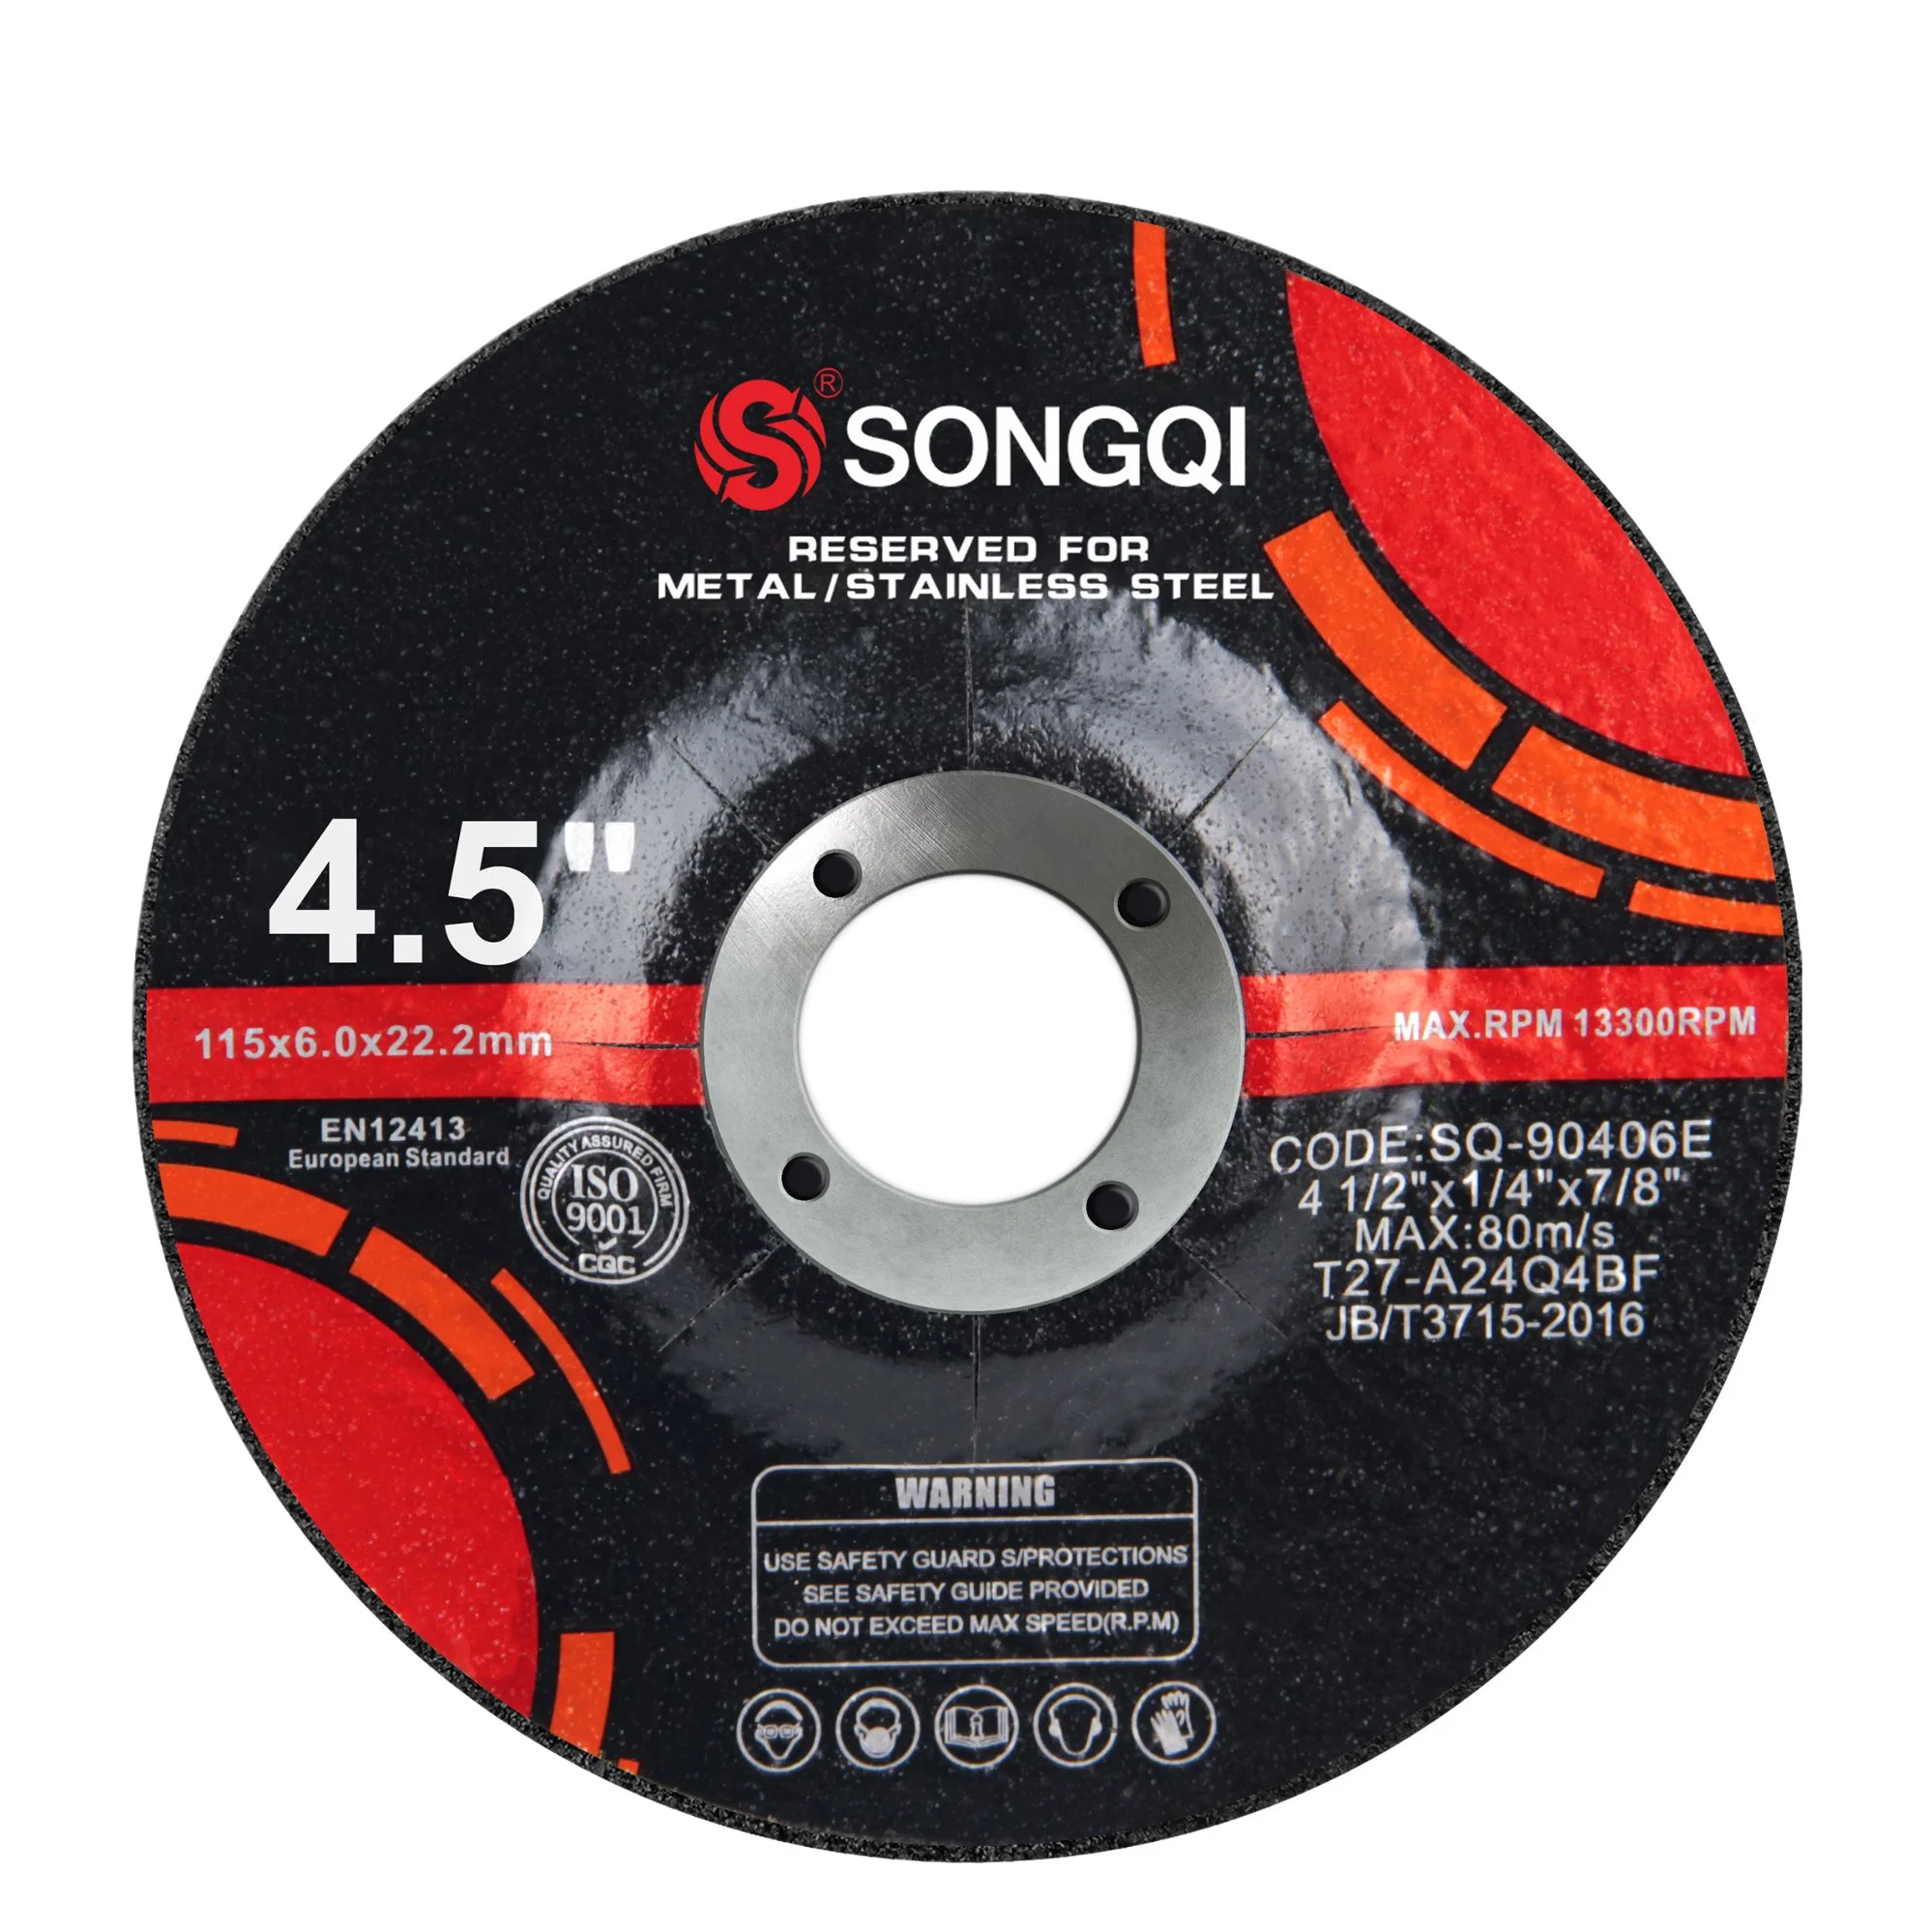 Songqi 4.5 pouces 115 mm Disque de meulage en métal pour meule de meulage en métal et acier.